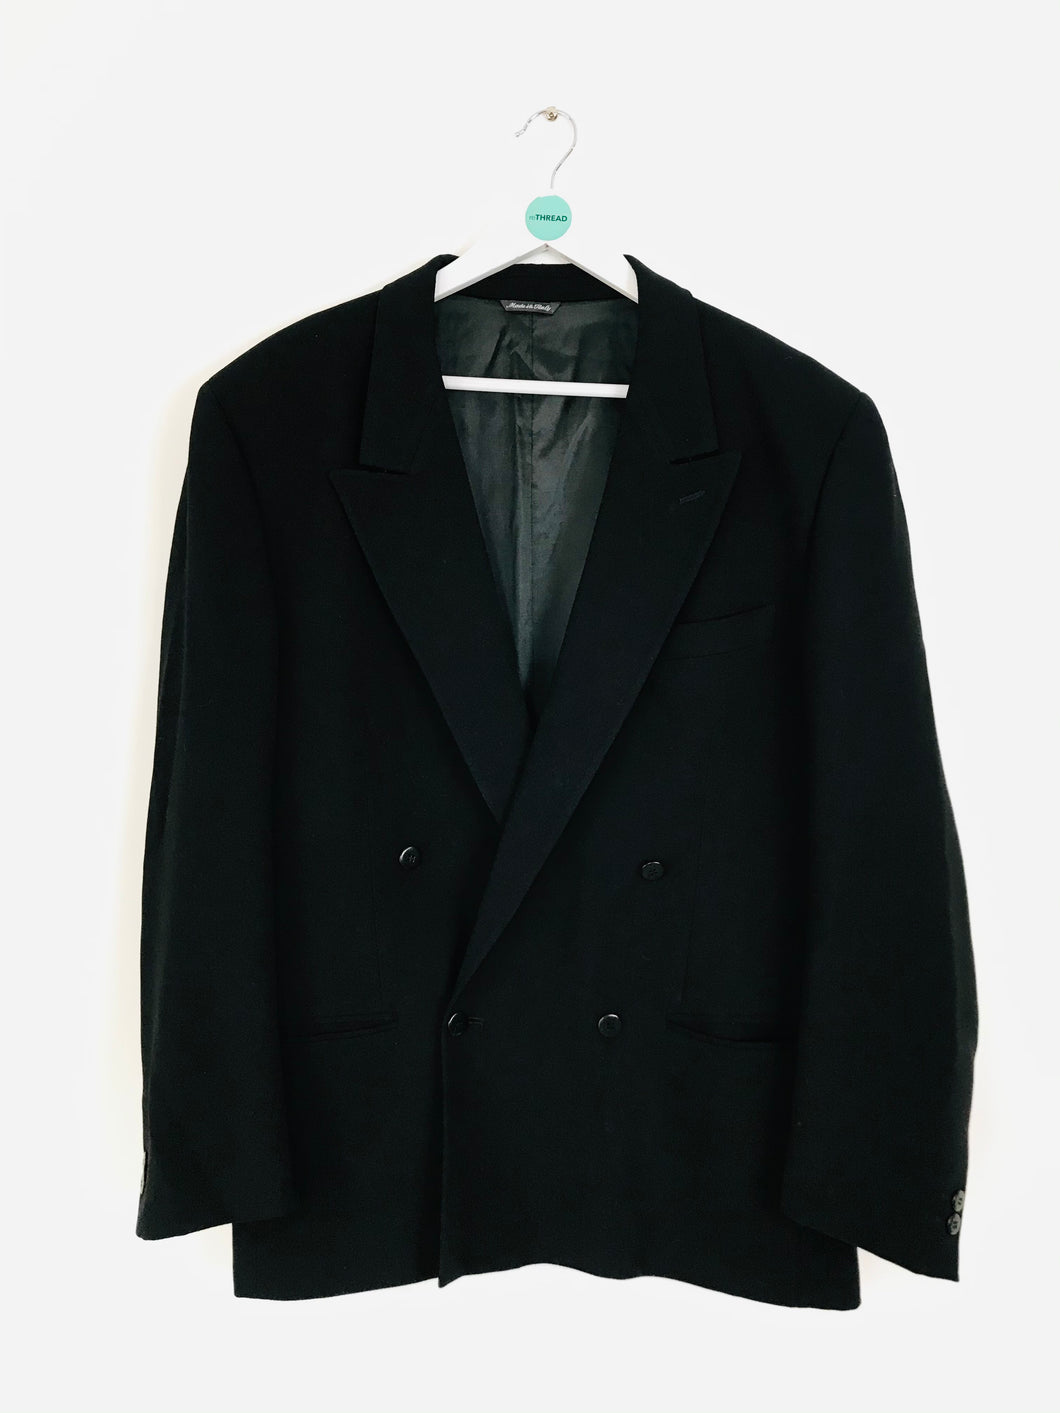 Versus Gianni Versace Men’s Double Breasted Suit Jacket Blazer | EU52 UK42 | Black